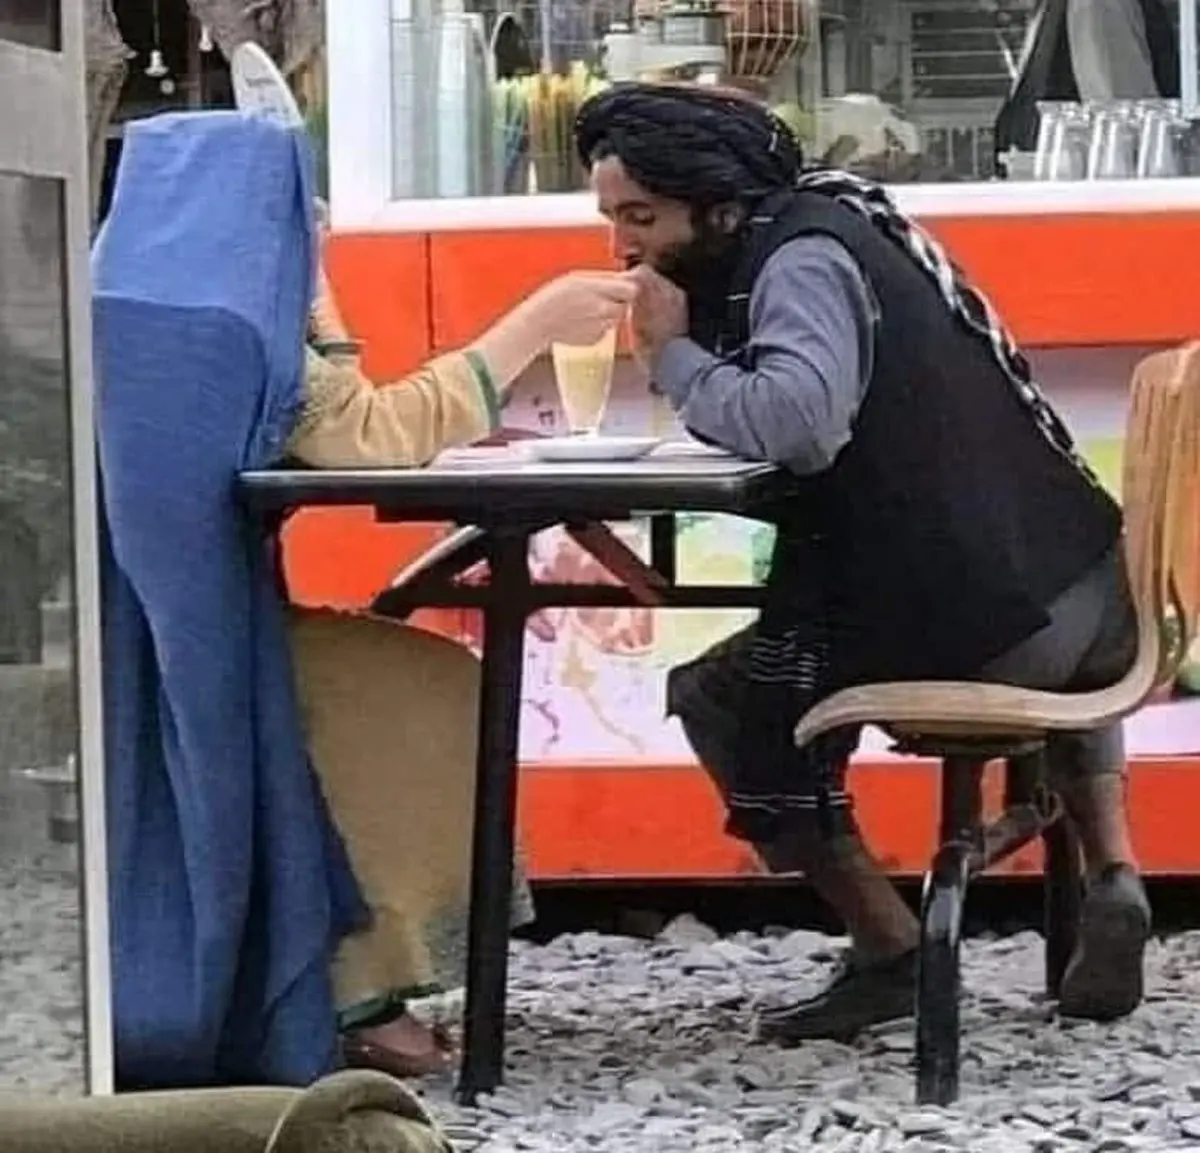  قرار عاشقانه یک جنگجوی طالبان در کافه سیار در کابل! +عکس